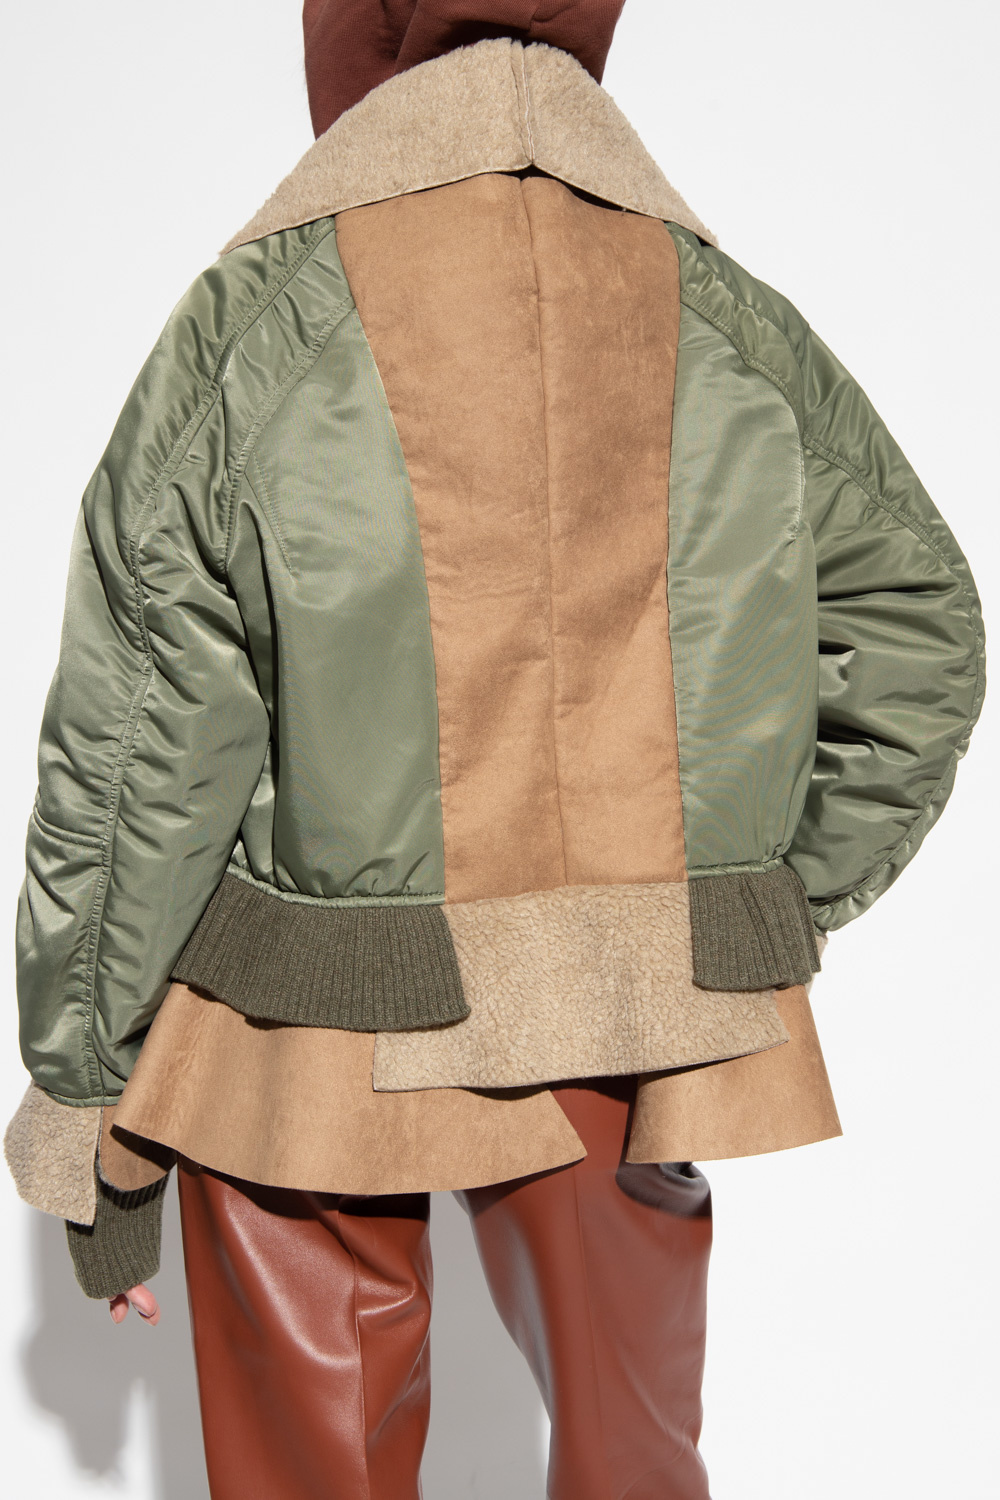 Undercover Asymmetrical print jacket